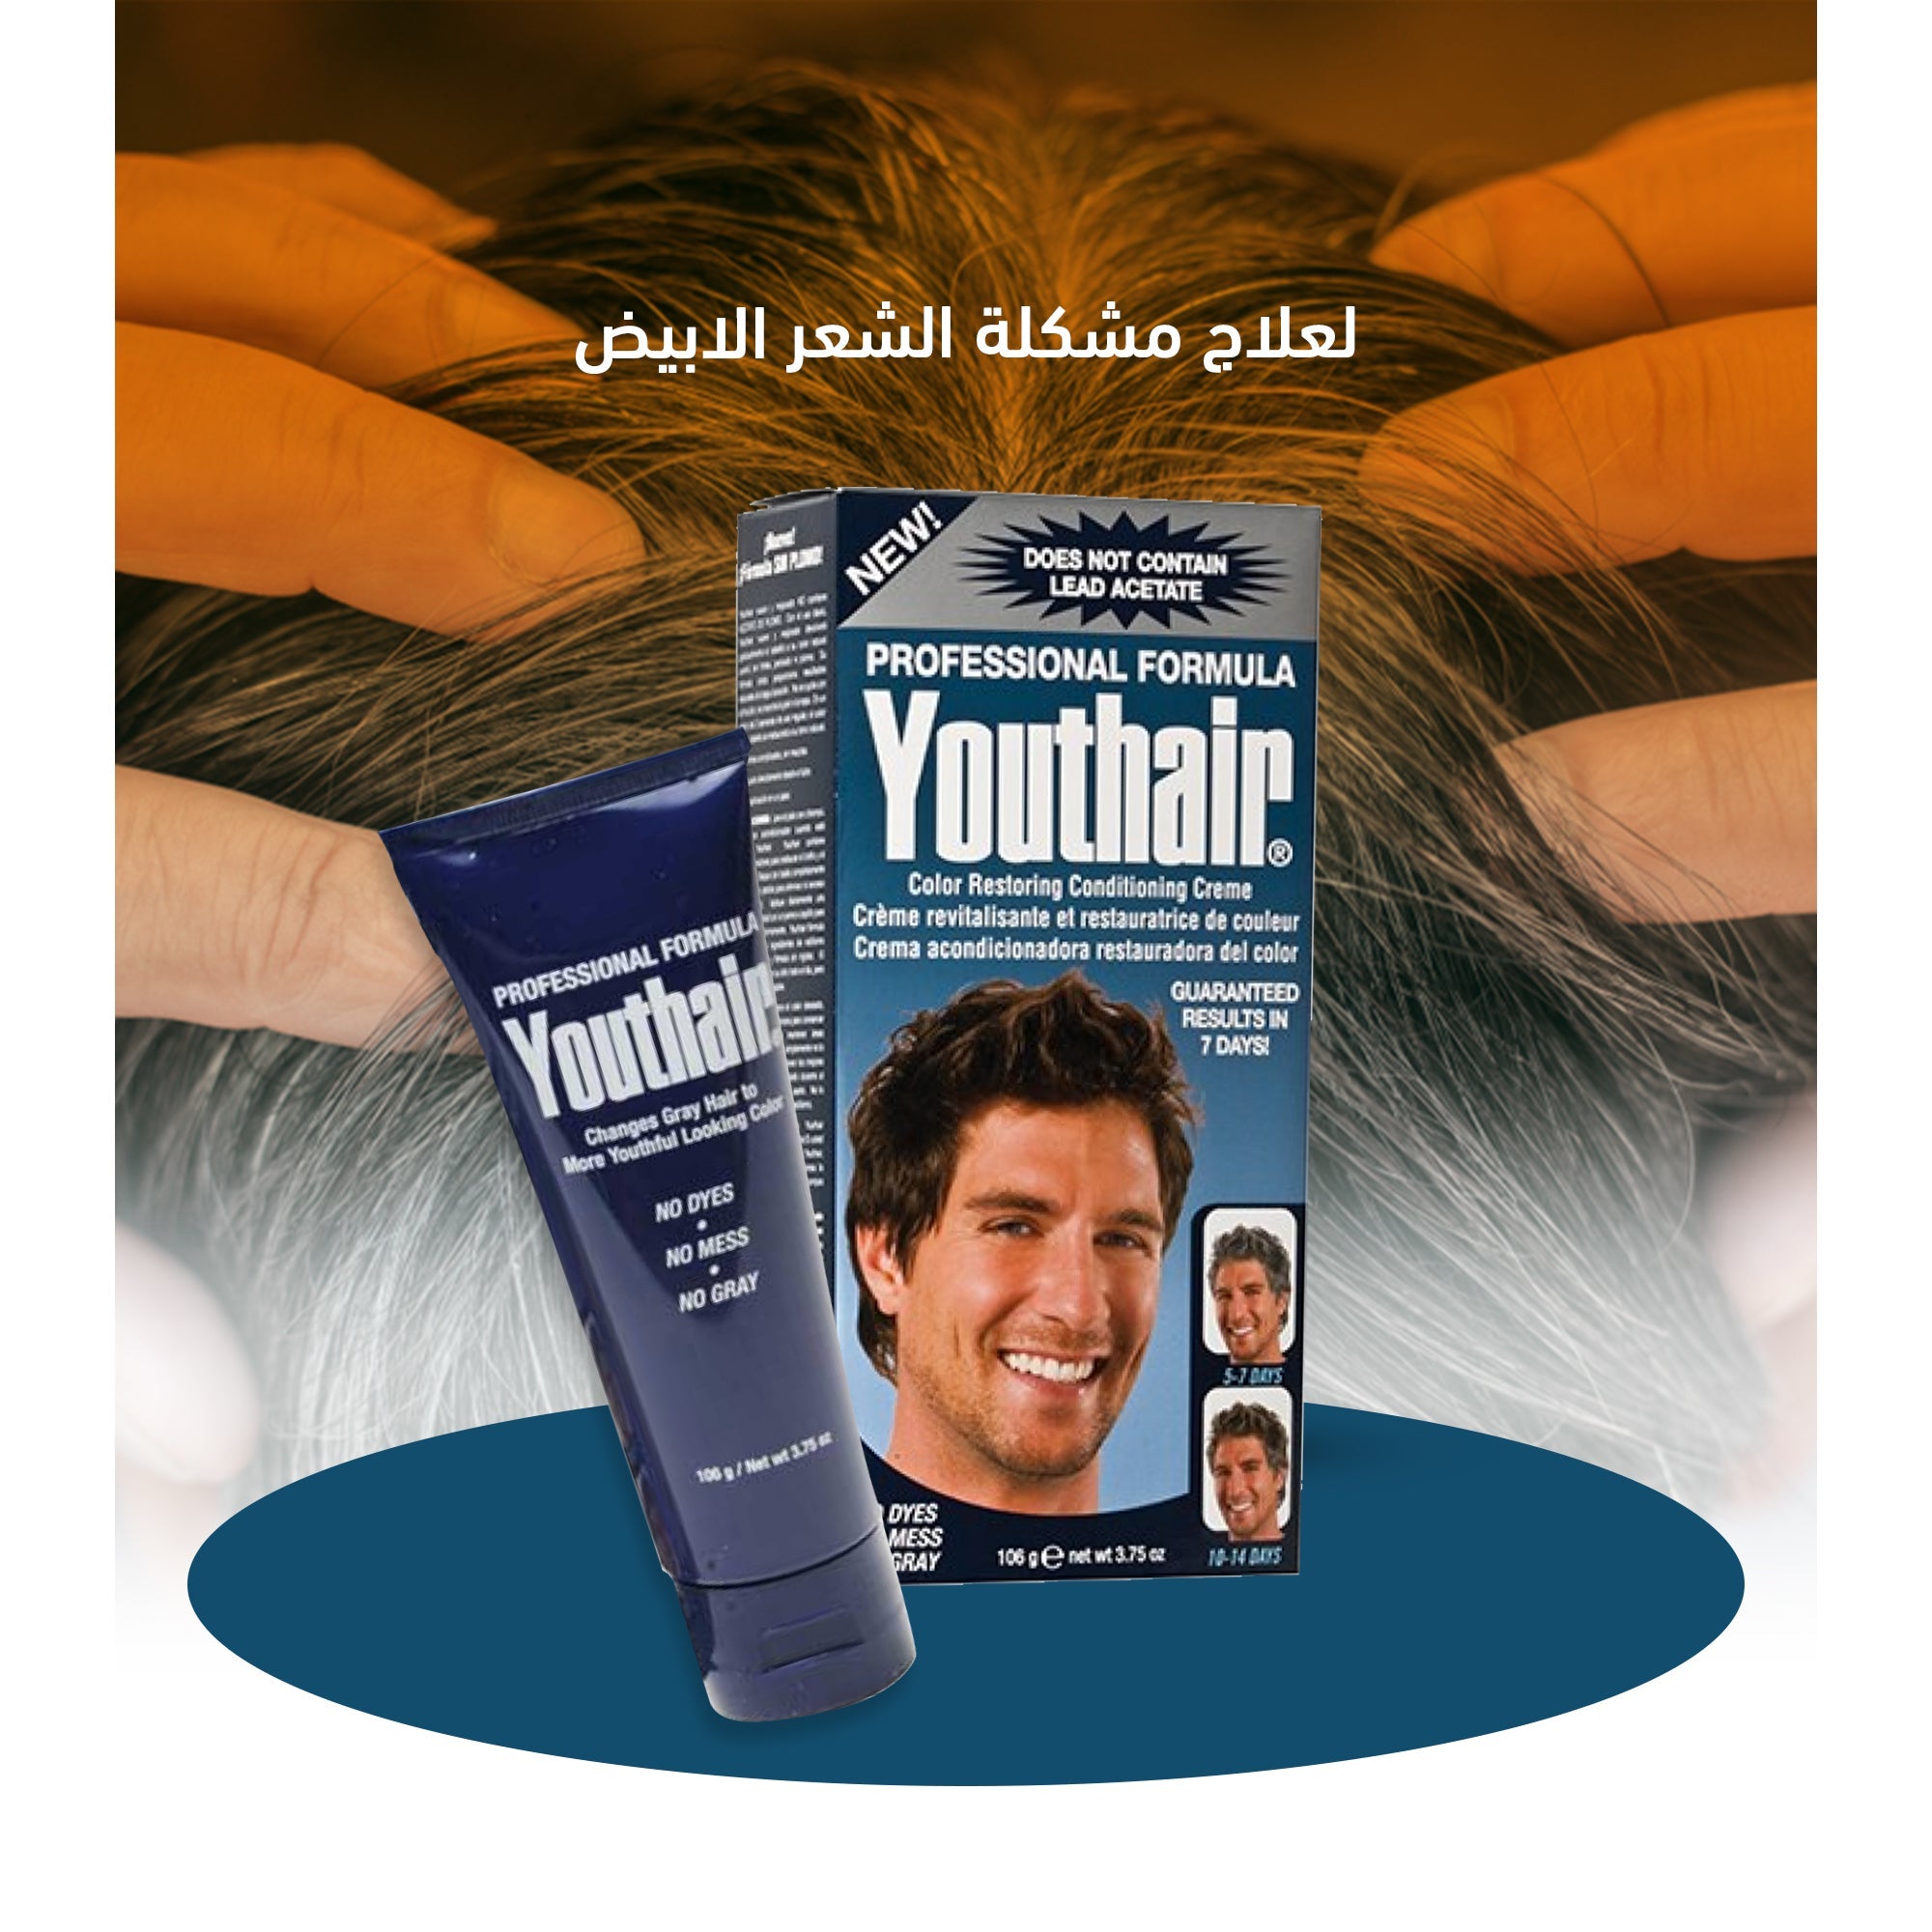 كريم youthair لعلاج مشكلة الشعر الابيض